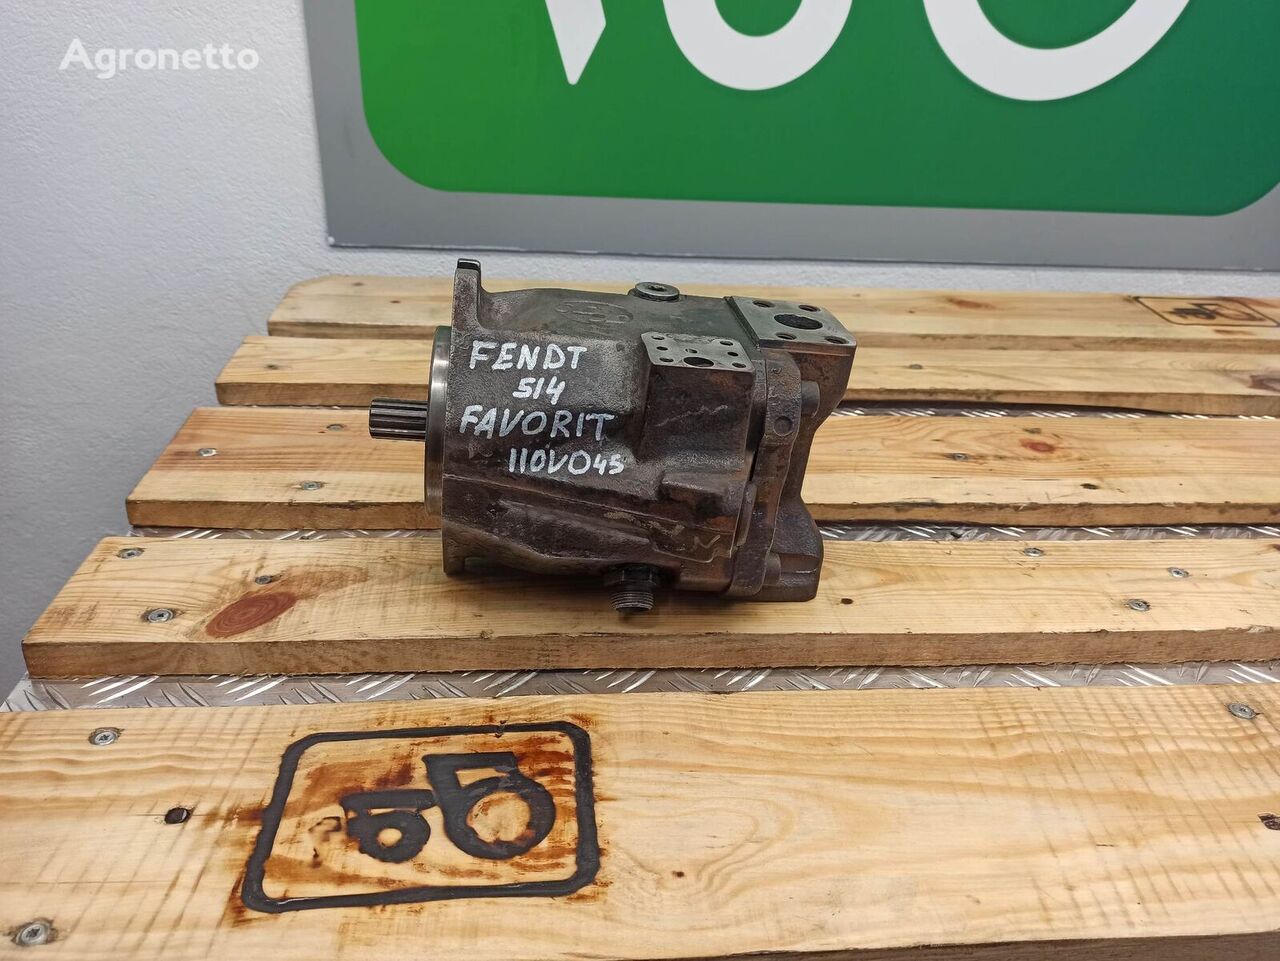 Fendt 514 Favorit (110VO45) bomba hidráulica para tractor de ruedas